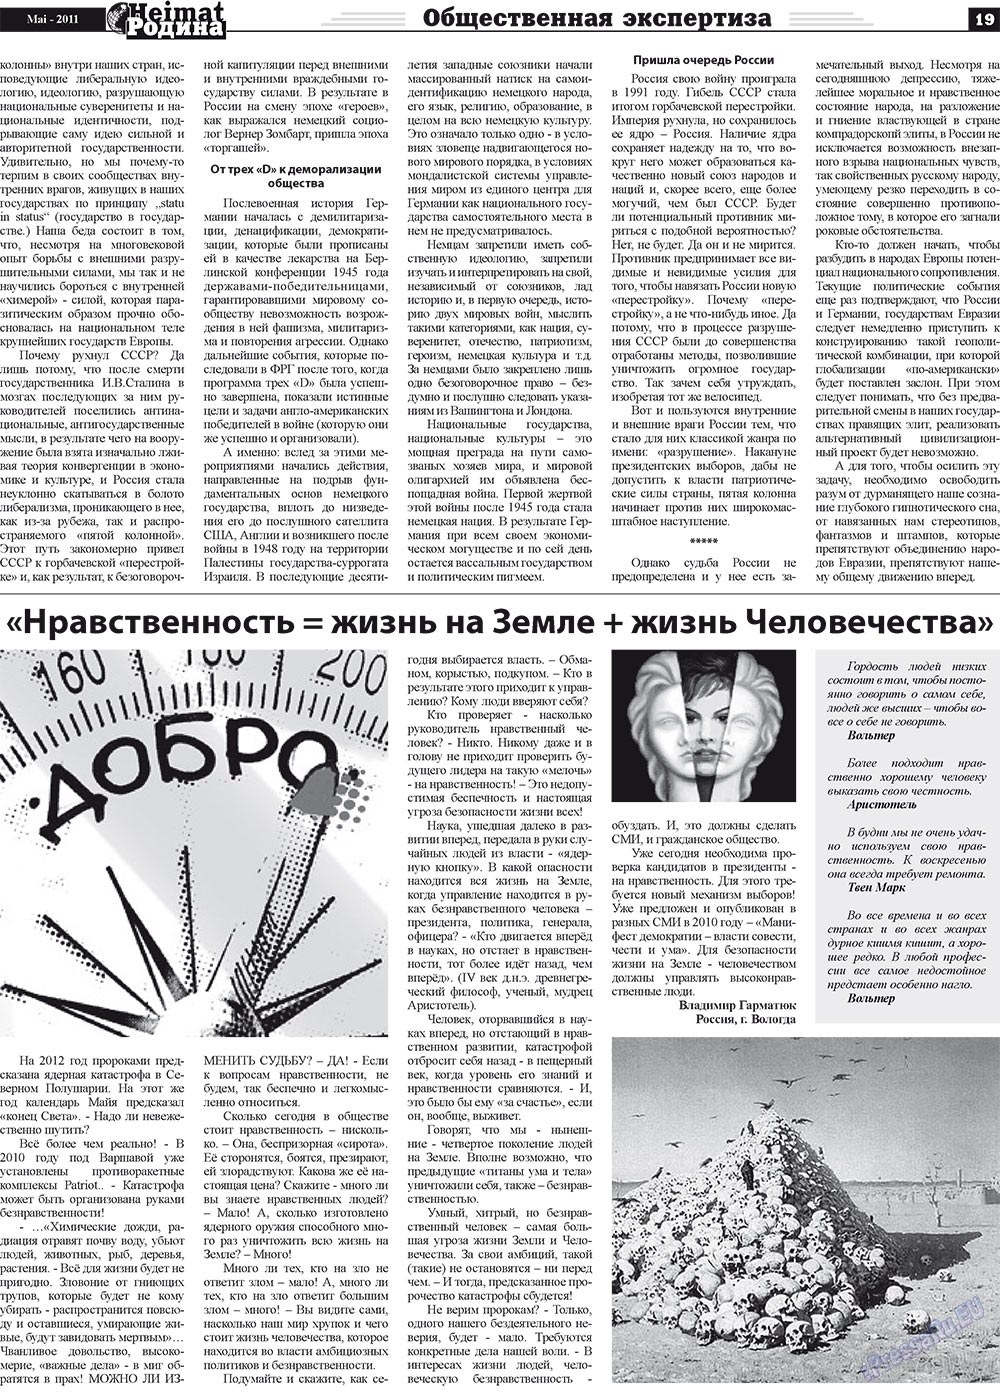 Heimat-Родина (газета). 2011 год, номер 5, стр. 19